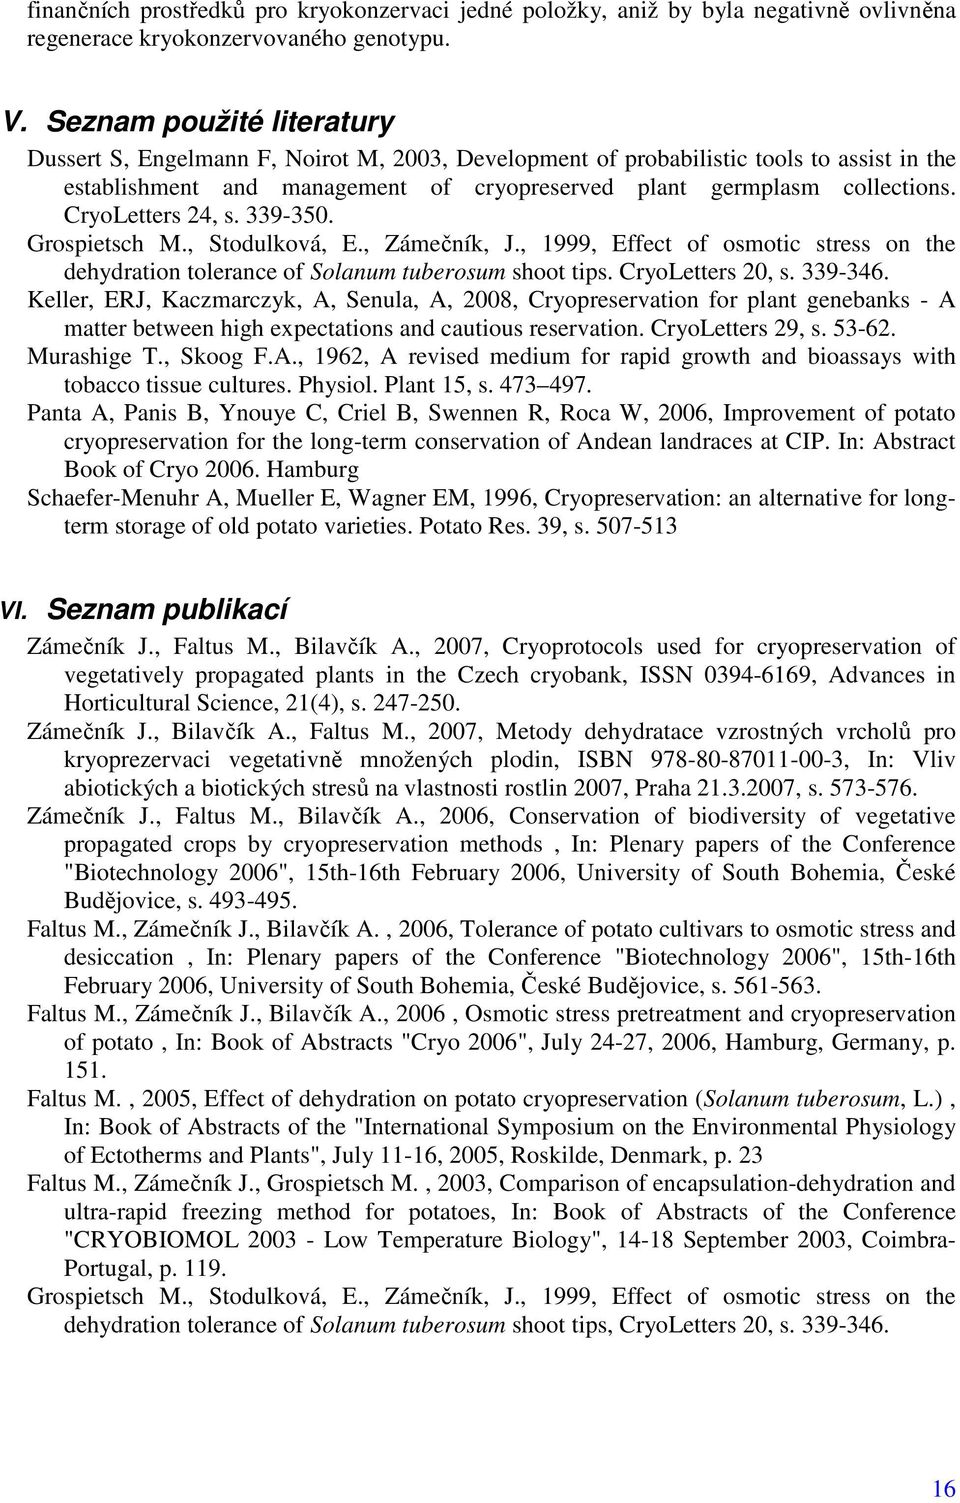 CryoLetters 24, s. 339-350. Grospietsch M., Stodulková, E., Zámečník, J., 1999, Effect of osmotic stress on the dehydration tolerance of Solanum tuberosum shoot tips. CryoLetters 20, s. 339-346.